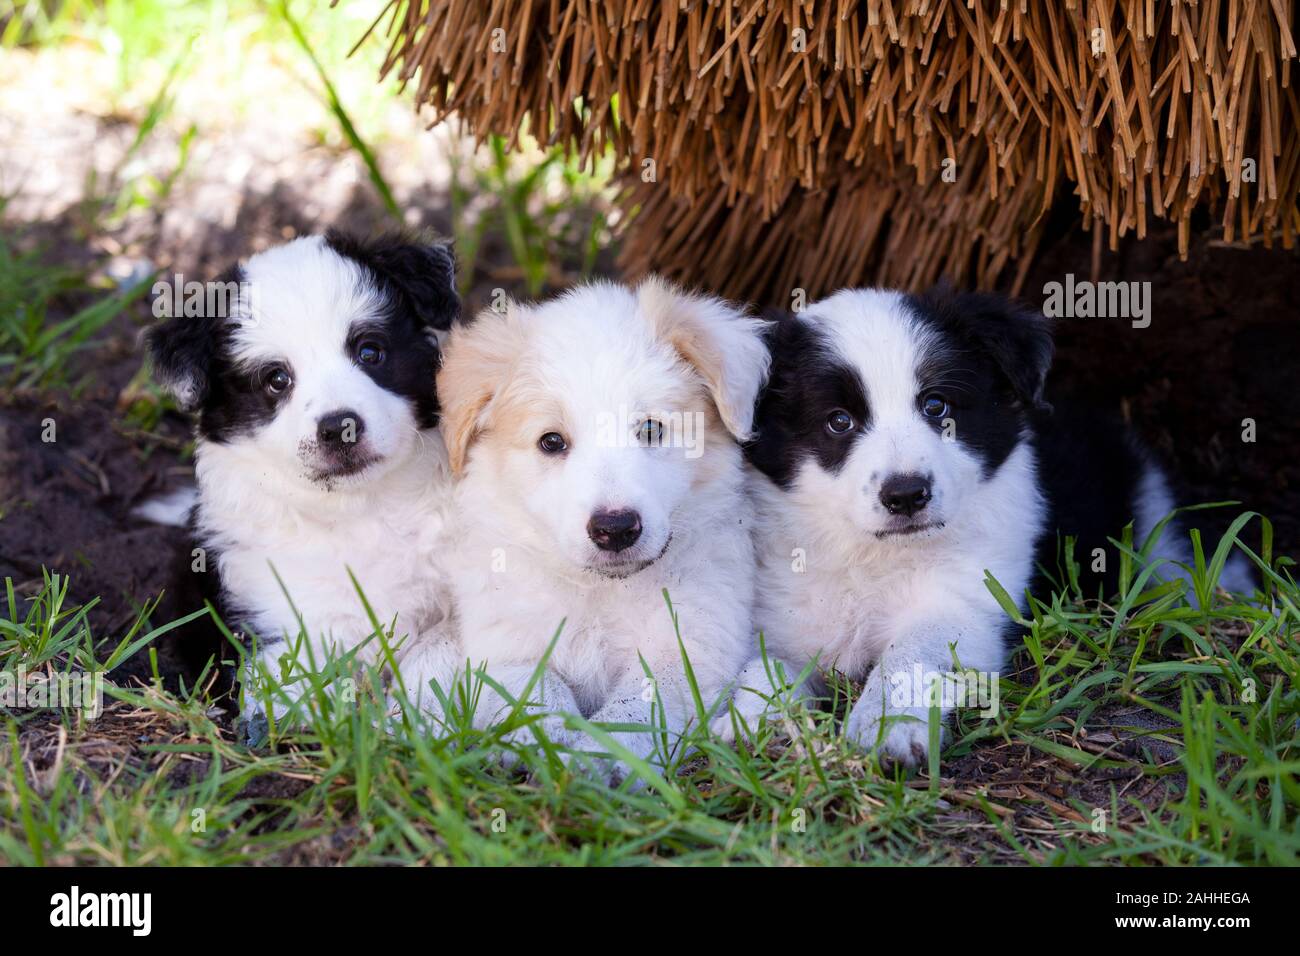 Frontera cachorros collie tres, dos en blanco y negro y uno rojo y blanco, buscando lindo en la hierba. Foto de stock